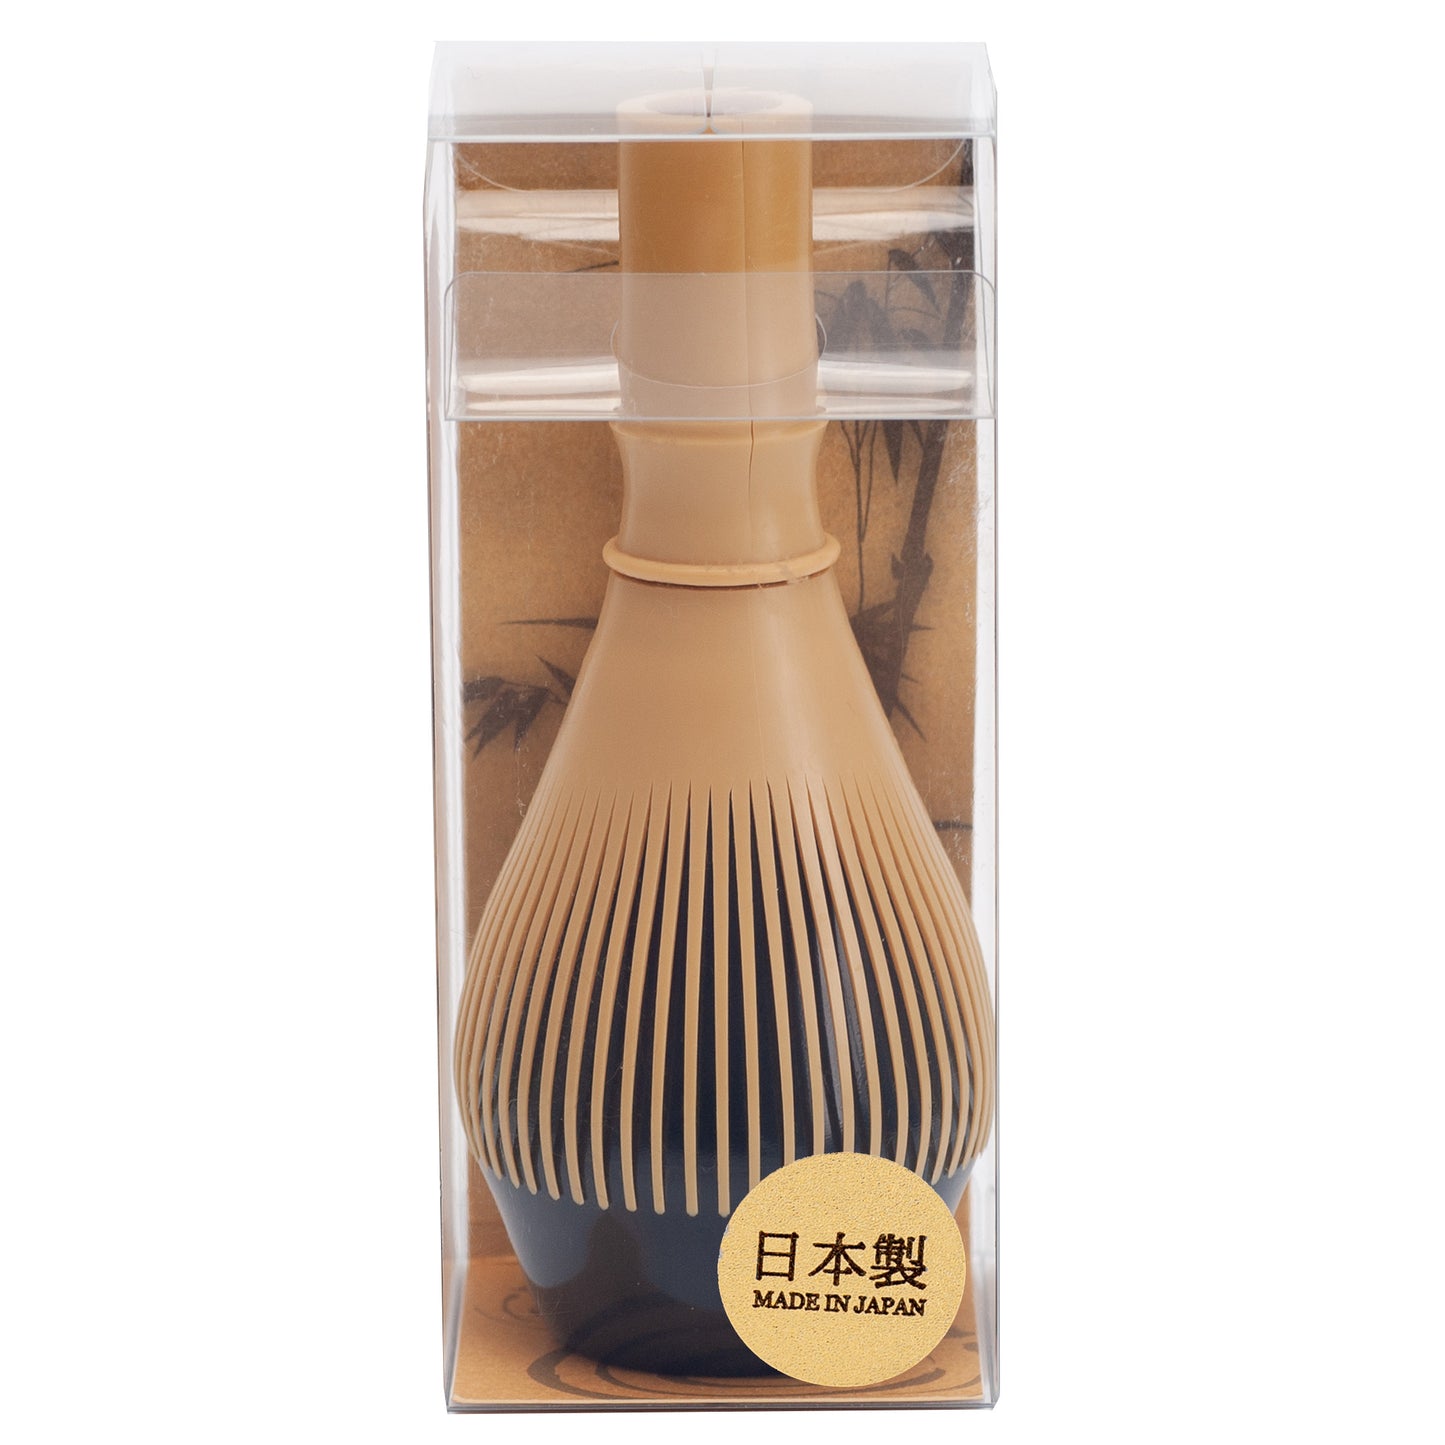 Matcha Tea Whisk Made of Dishwasher Safe Polypropylene Plastic"Fugetsu Chasen" Made in Japan